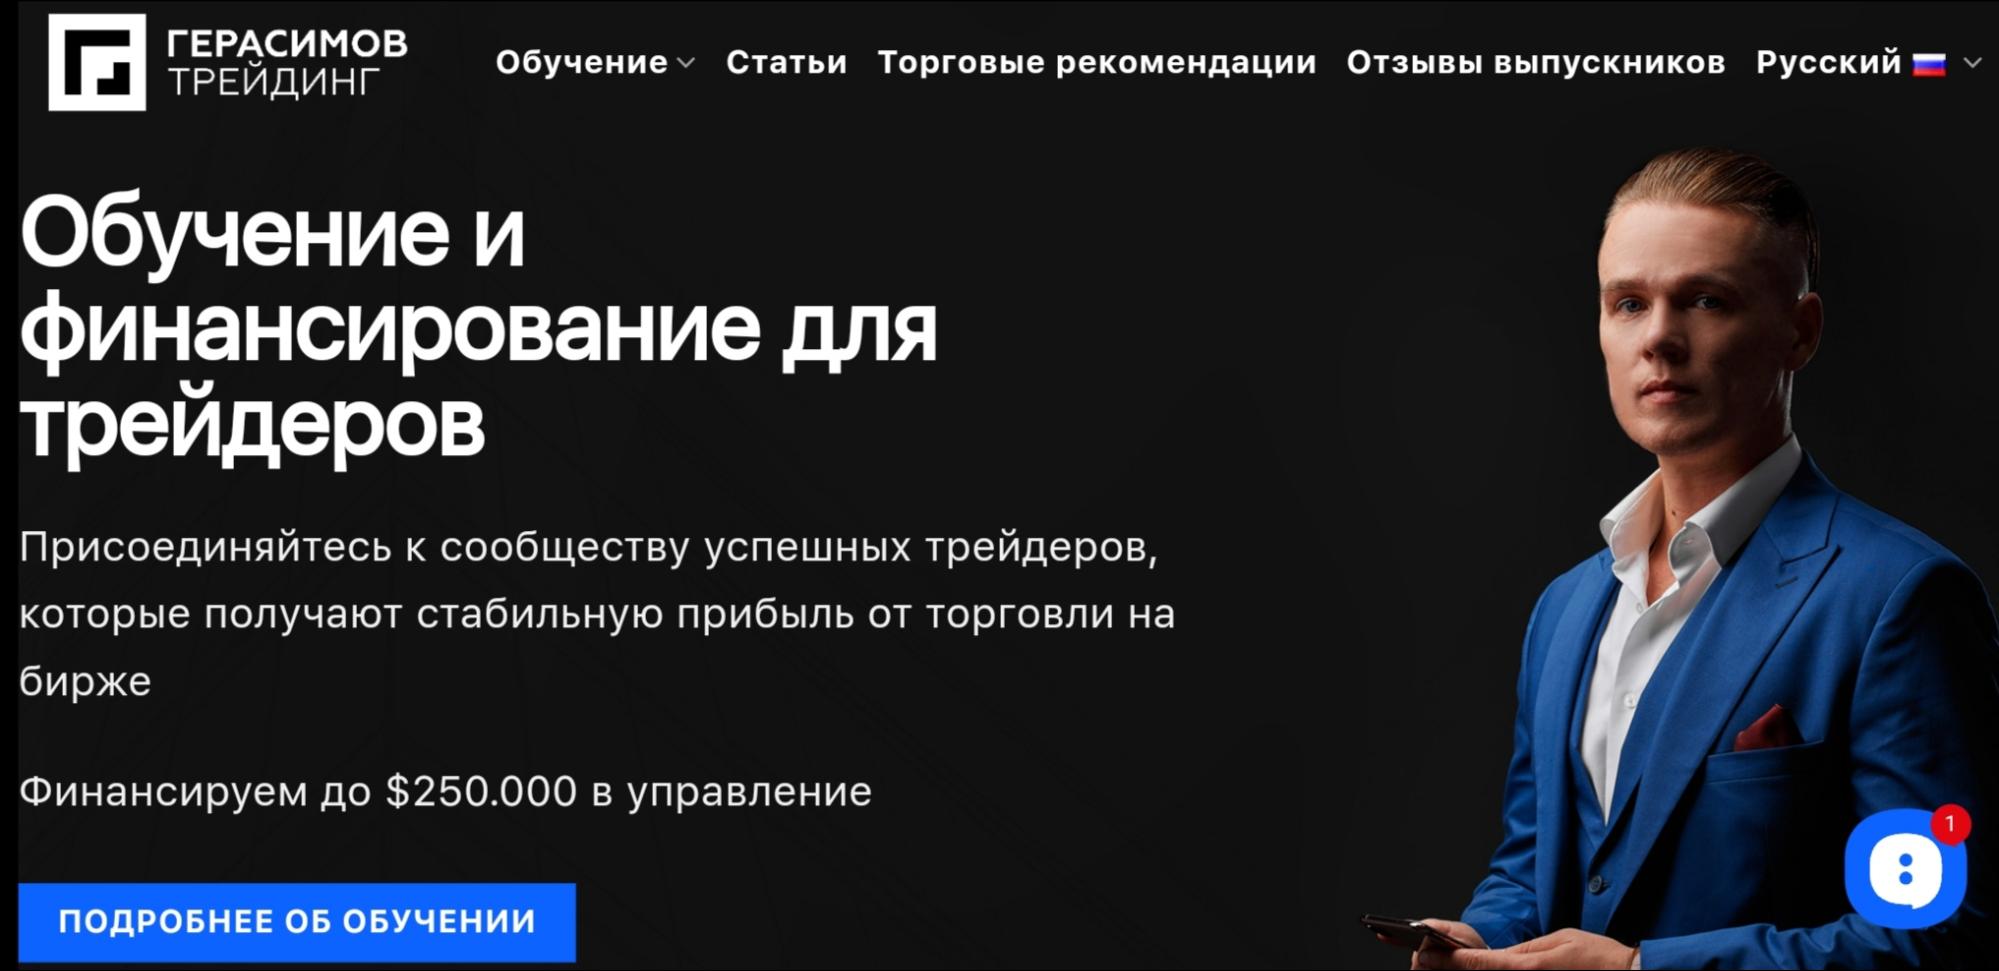 Никита Герасимов сайт